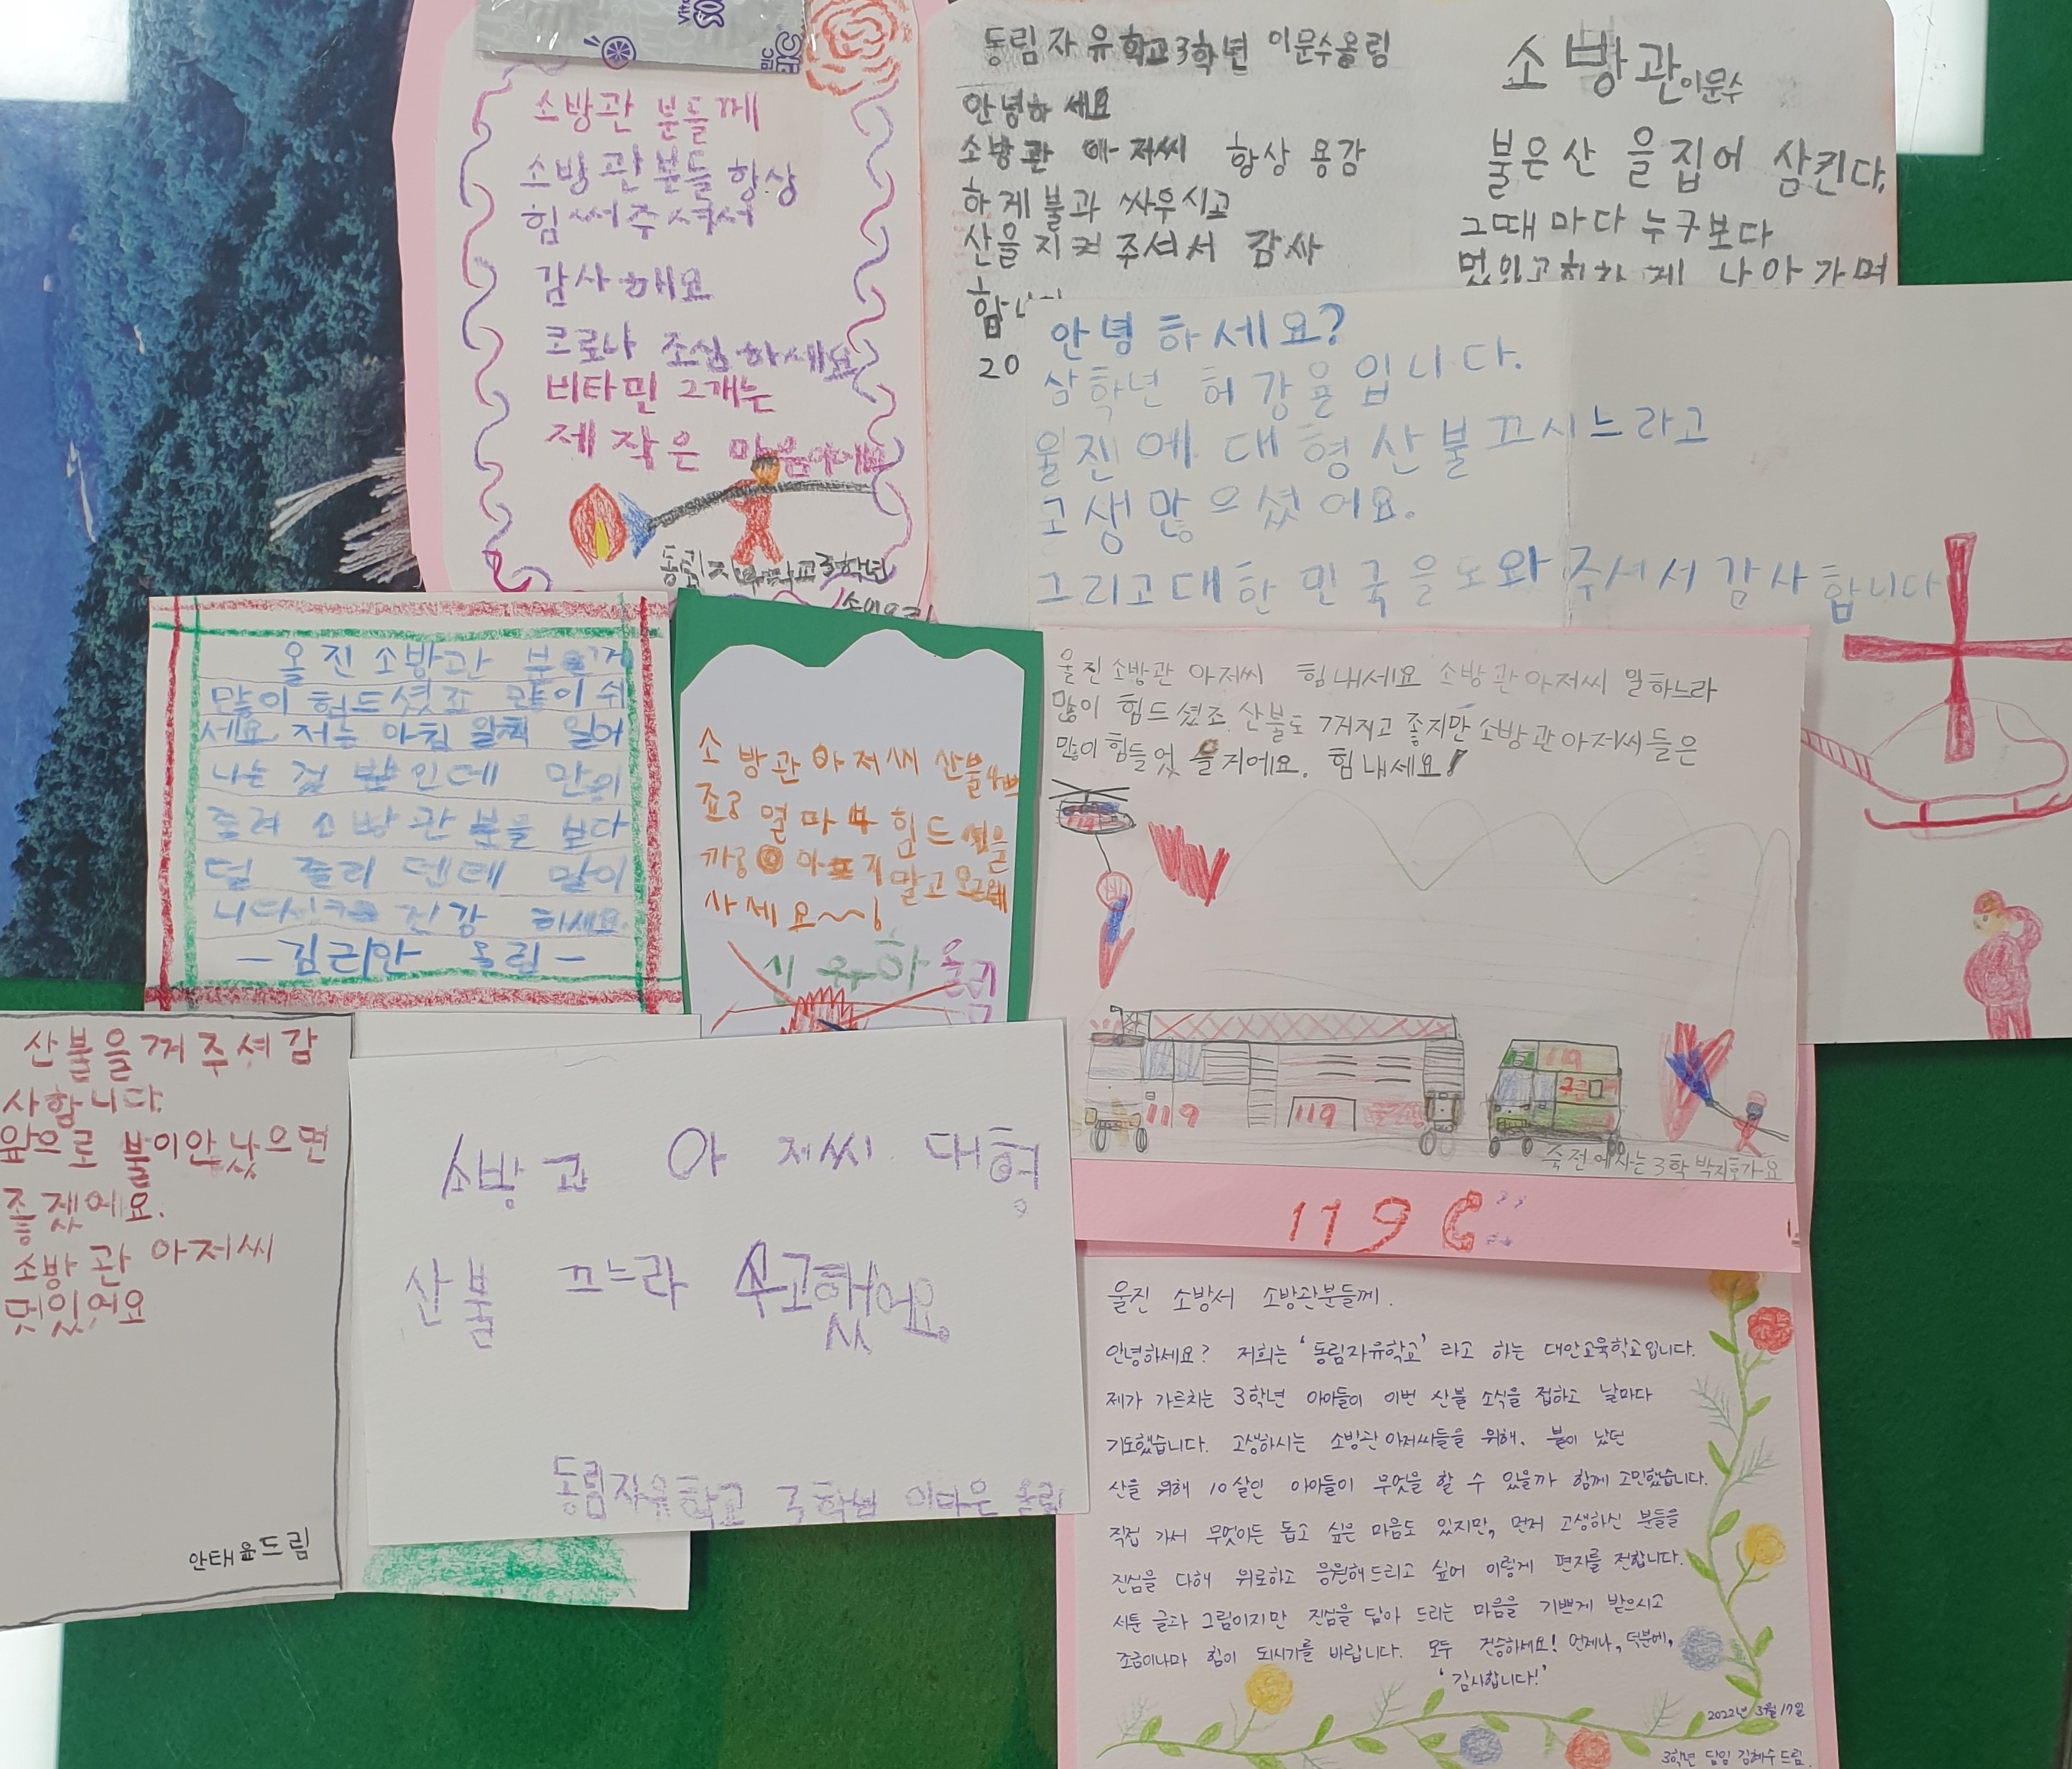 경기도 용인시 동림자유학교 3학년 친구들과  서지우학생의 감사편지